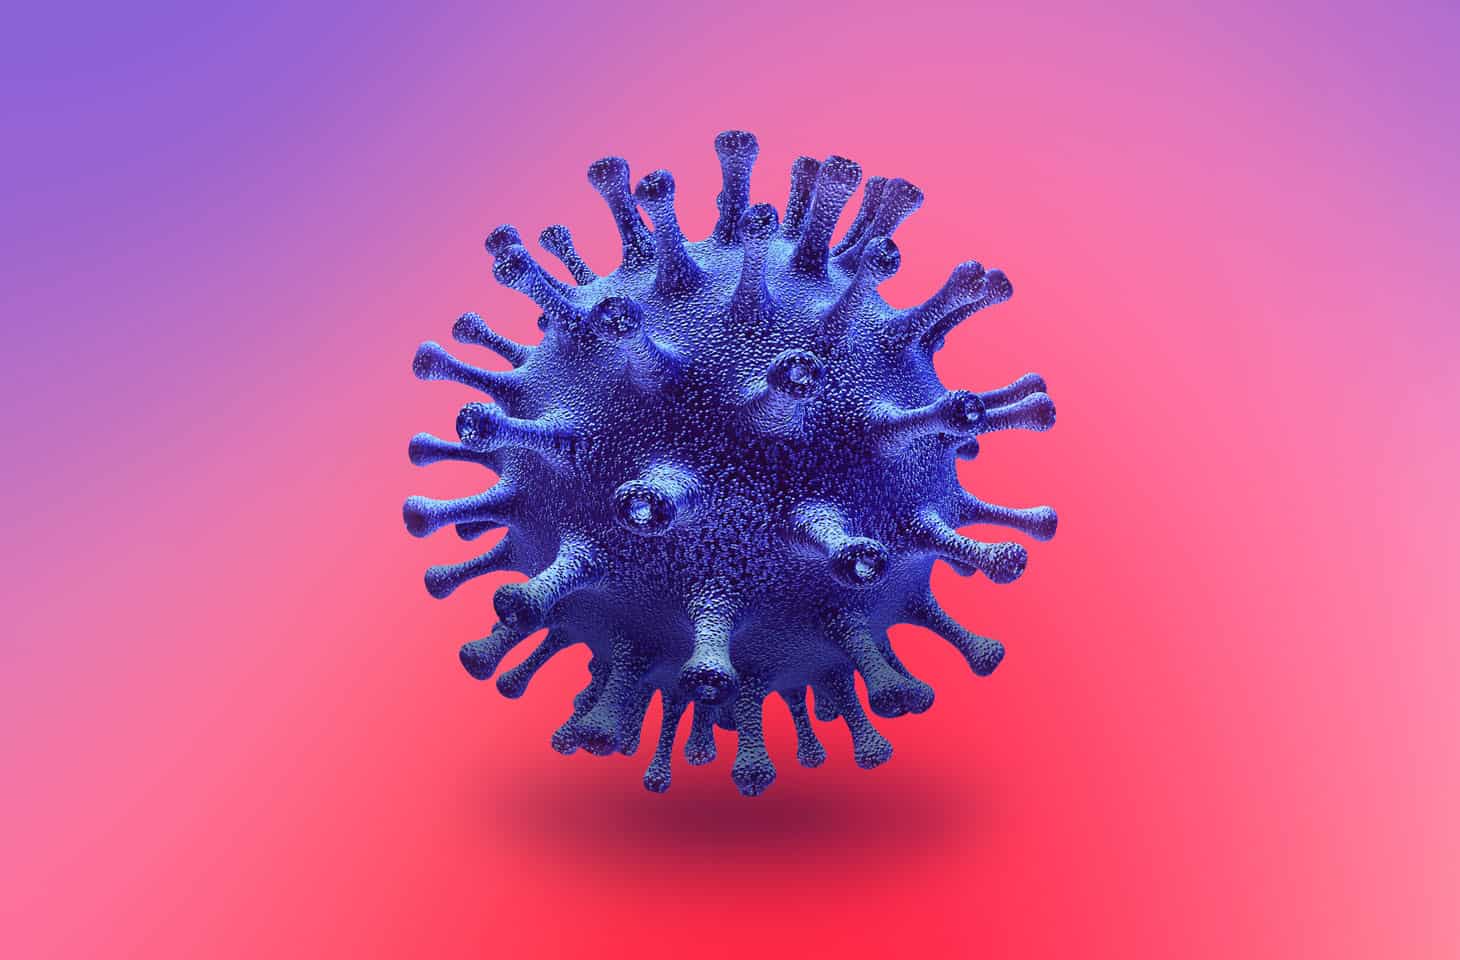 Temizlik Ürünlerinin COVID-19’a Karşı Etkileri Hakkında Yanlış Bilinenler – Corona Virüs Hakkında Merak Edilen Her Şey!